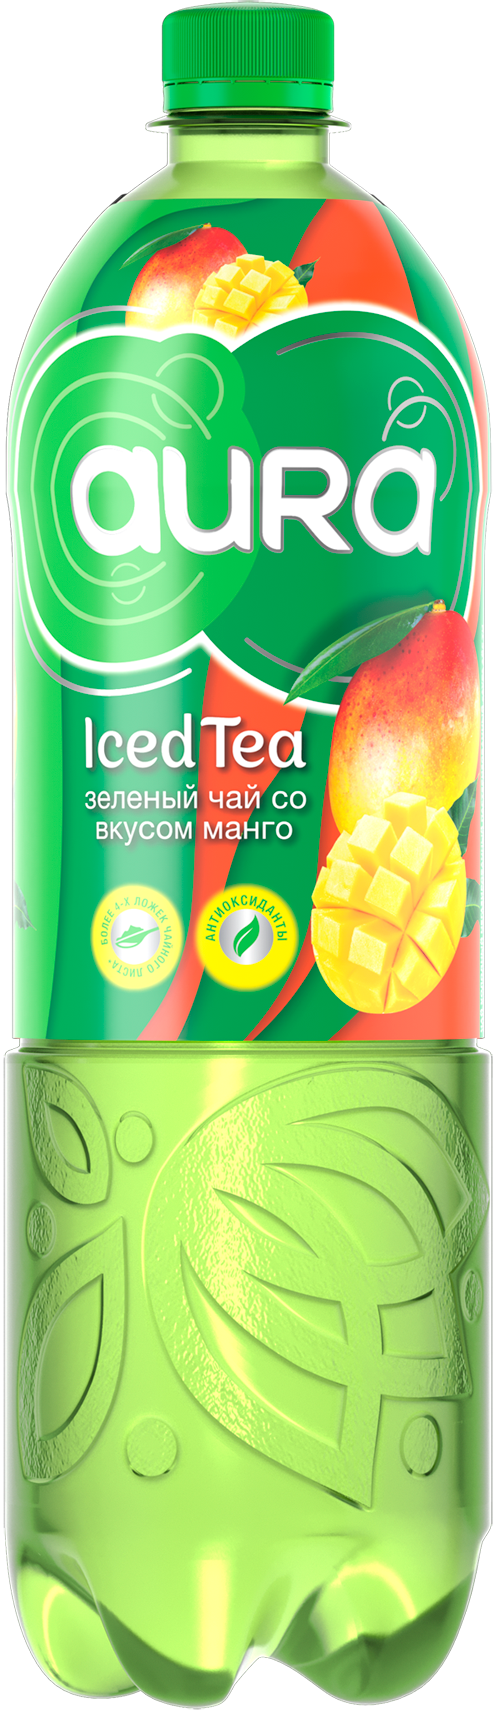 Aura Iced Tea Green tea with mango flavor